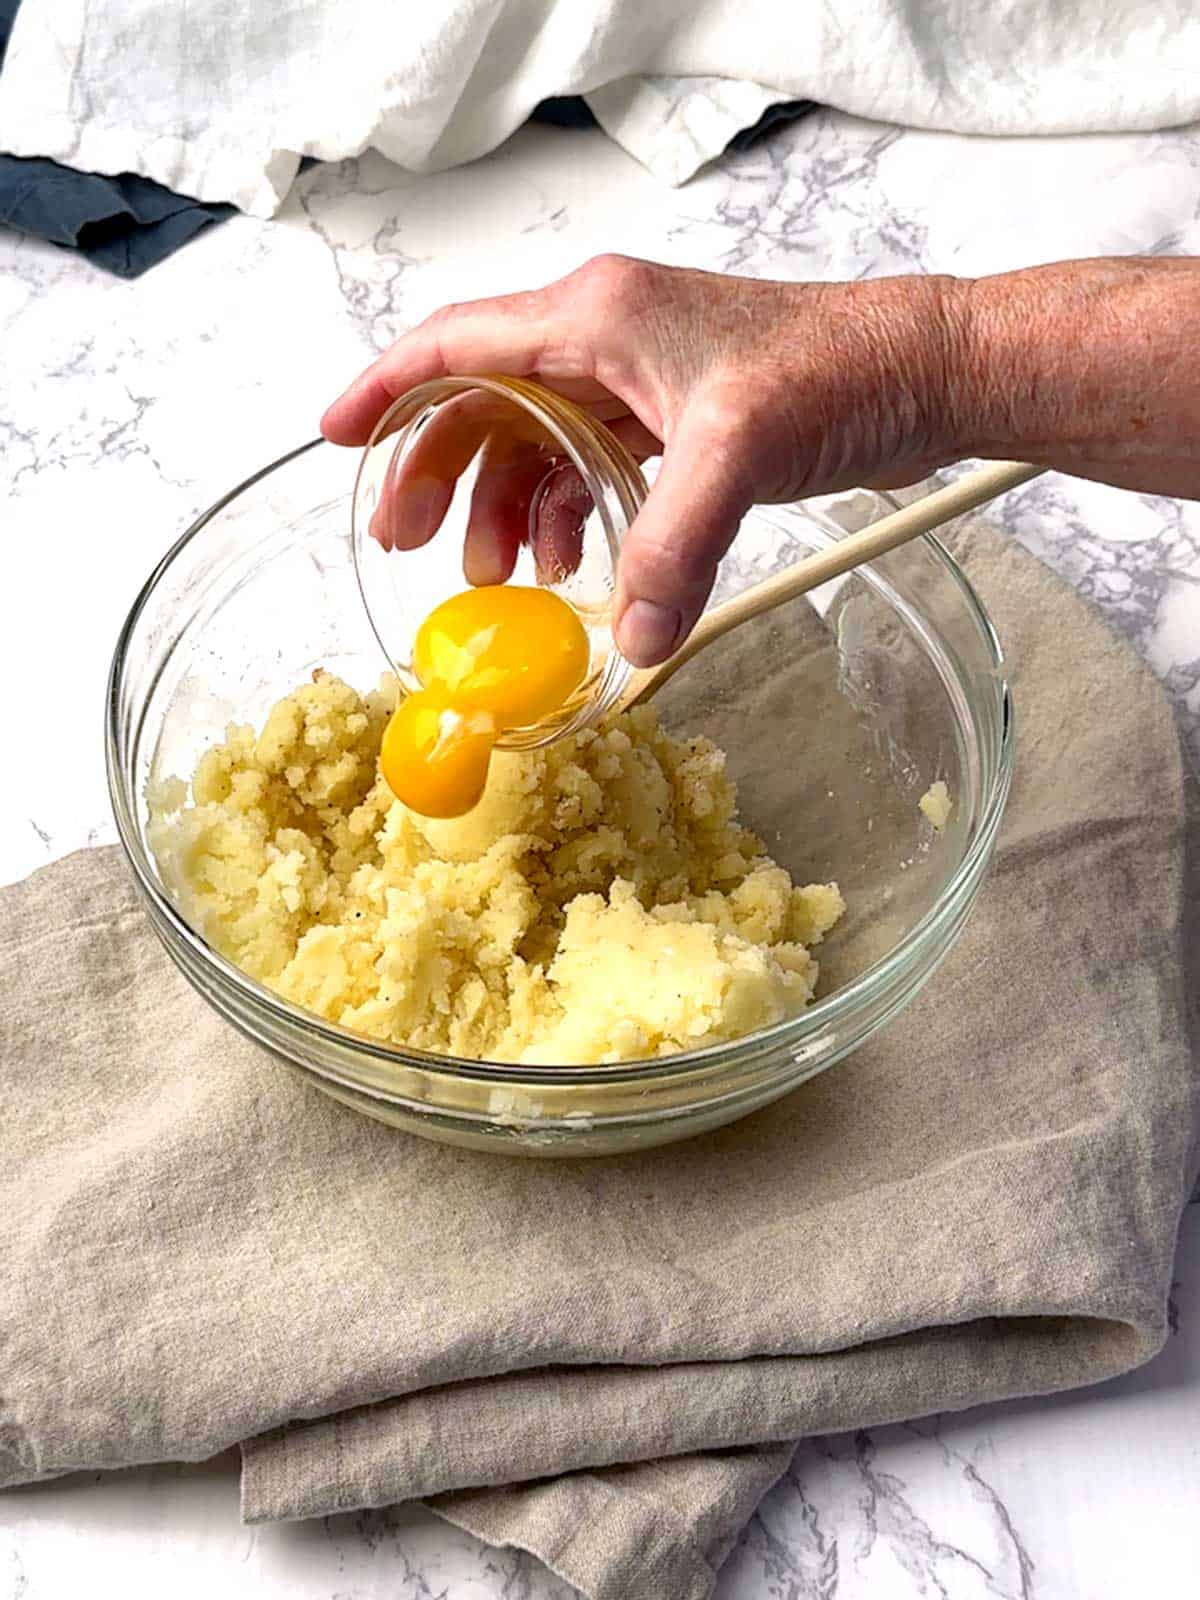 Adding egg yolks to the potato mixture,